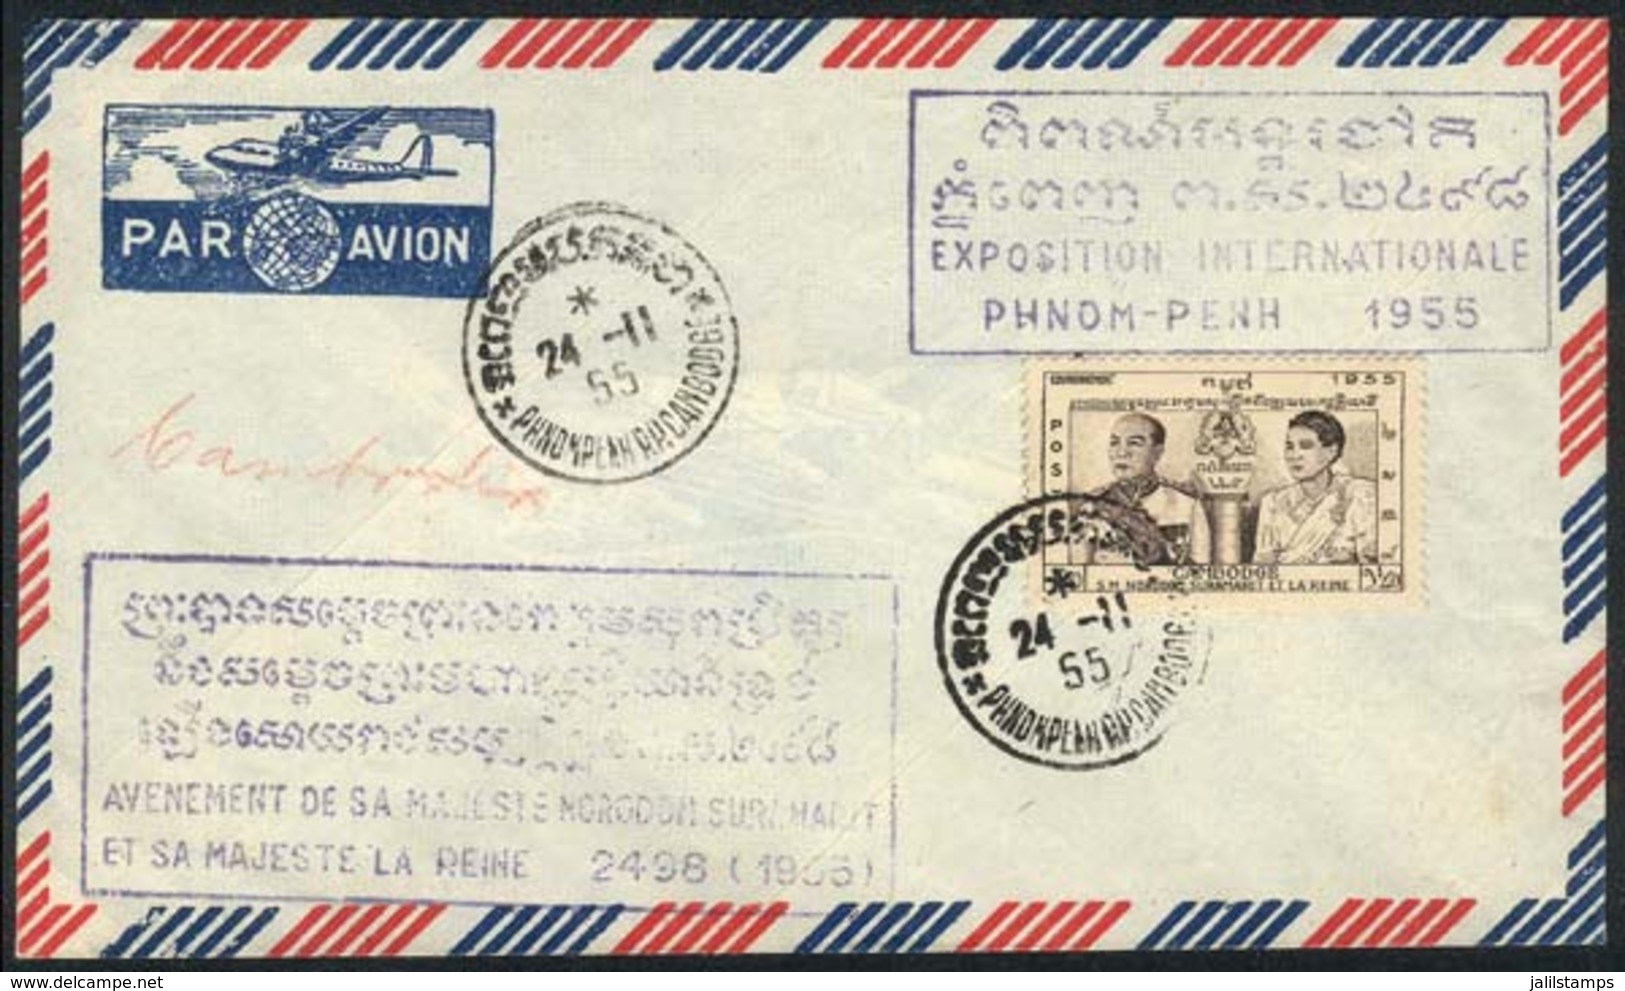 CAMBODIA: Cover With Commemorative Cachet Of The Phnom-Penh Intl. Philatelic Expo, 24/NO/1955, VF! - Cambodia